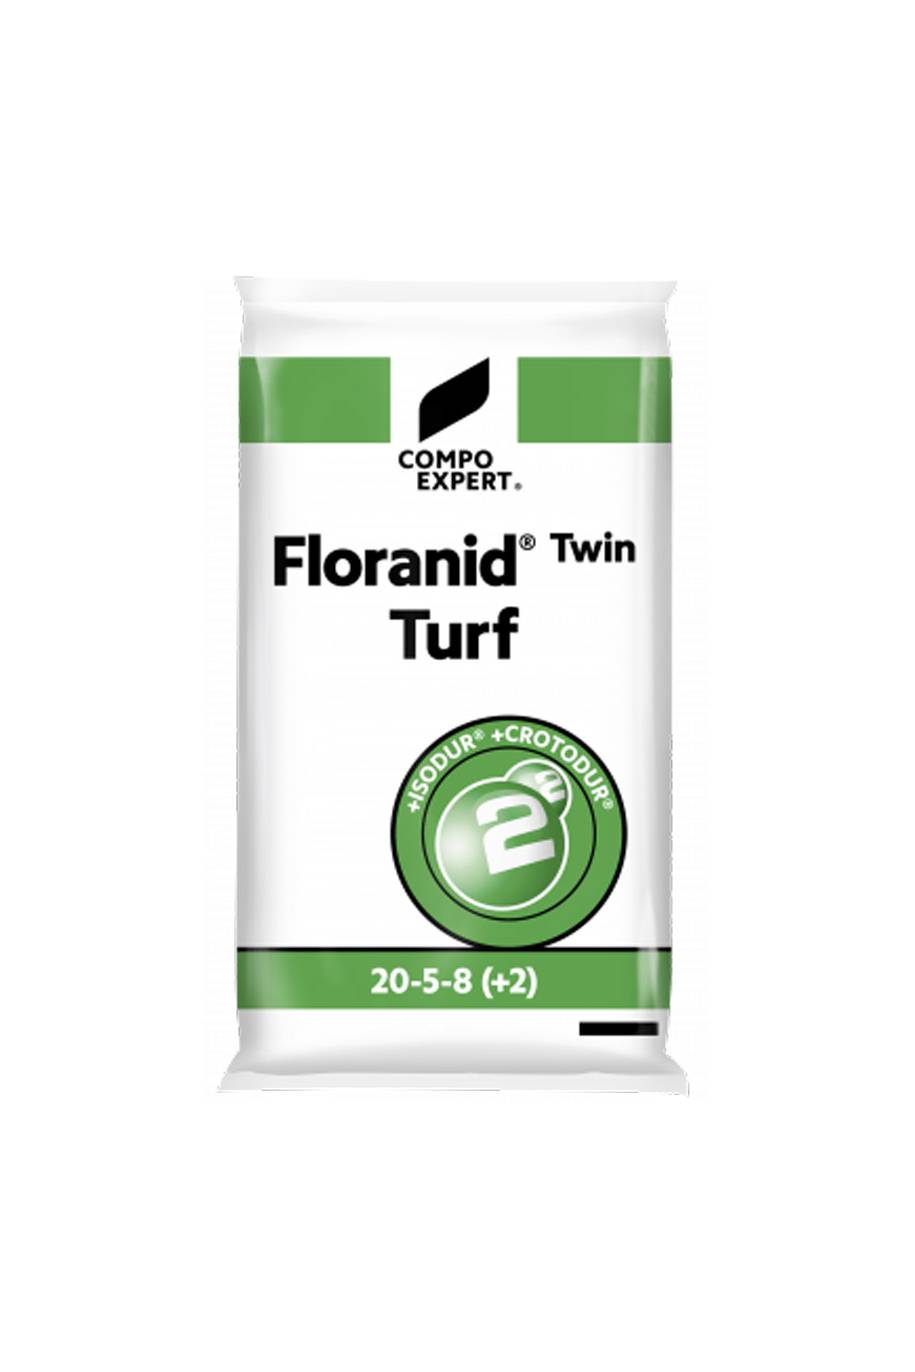 Floranid Twin Turf NPK fertilizer 20-5-8